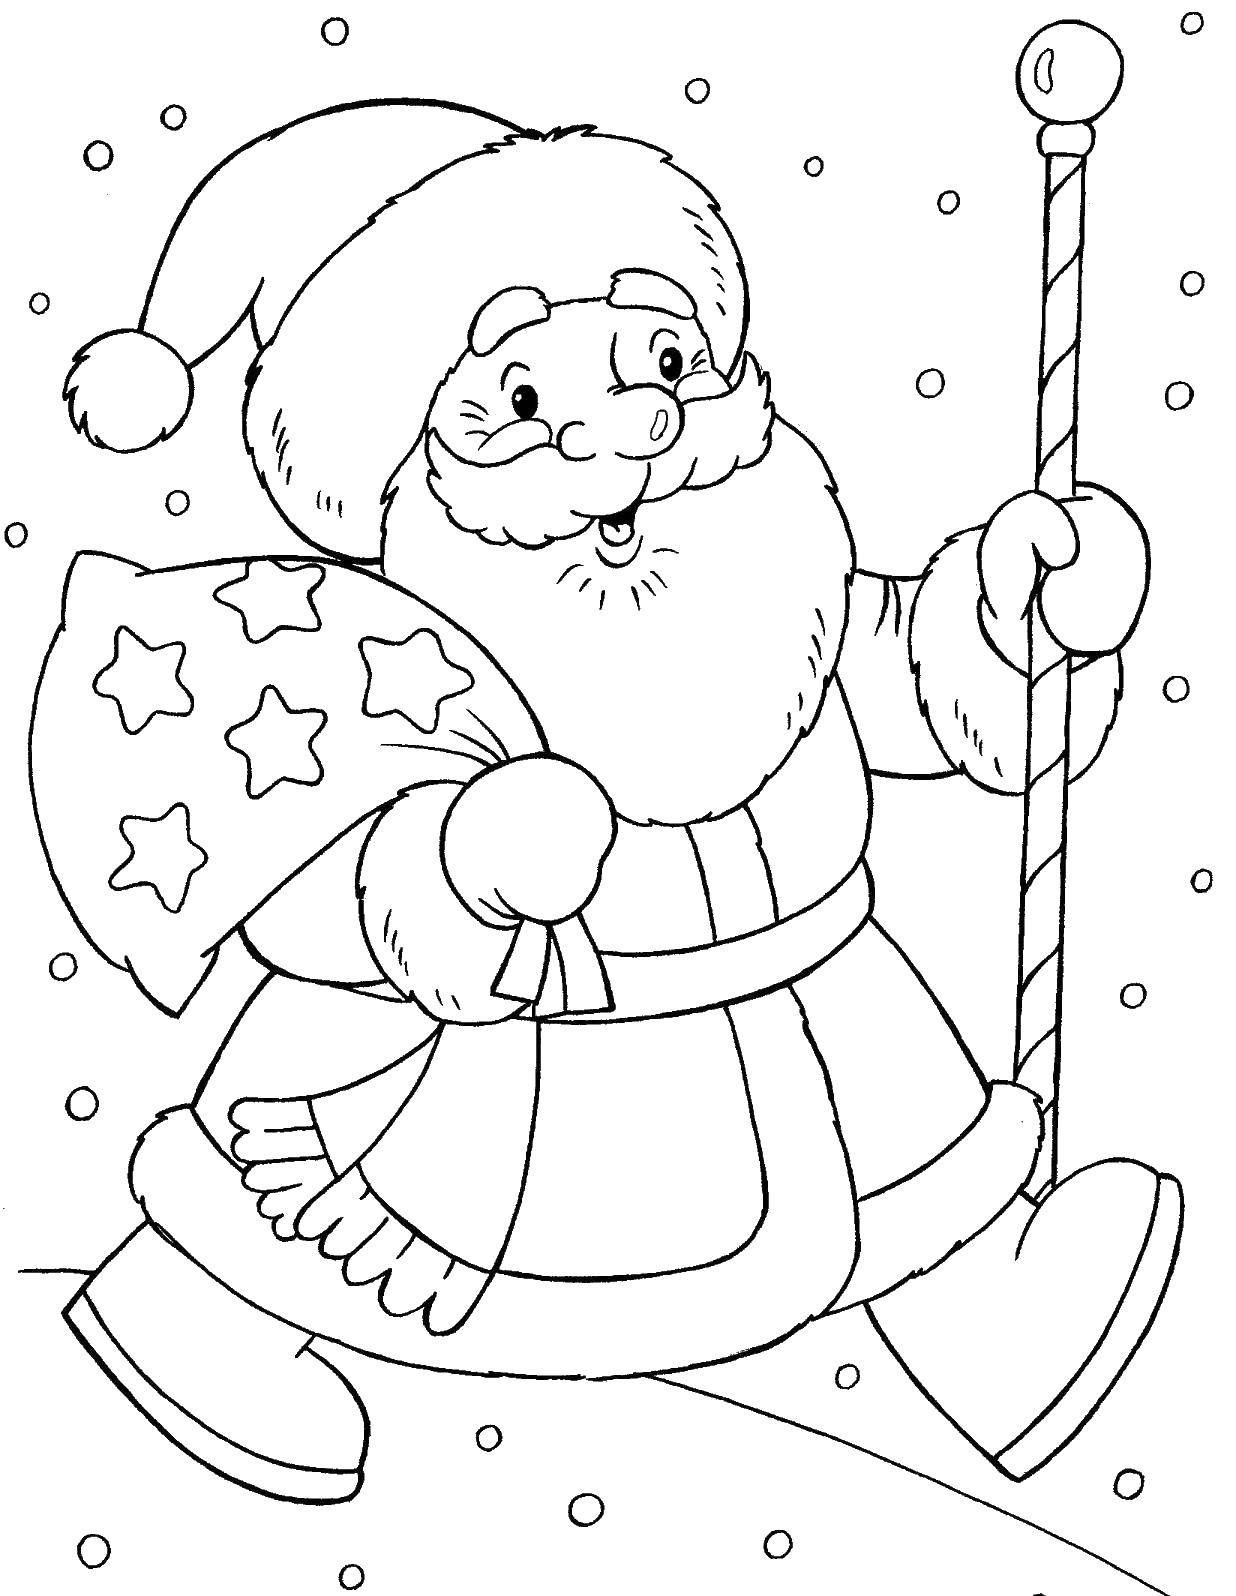 Название: Раскраска Дед мороз с посохом и мешком для подарков. Категория: дед мороз. Теги: Дед мороз, санки.